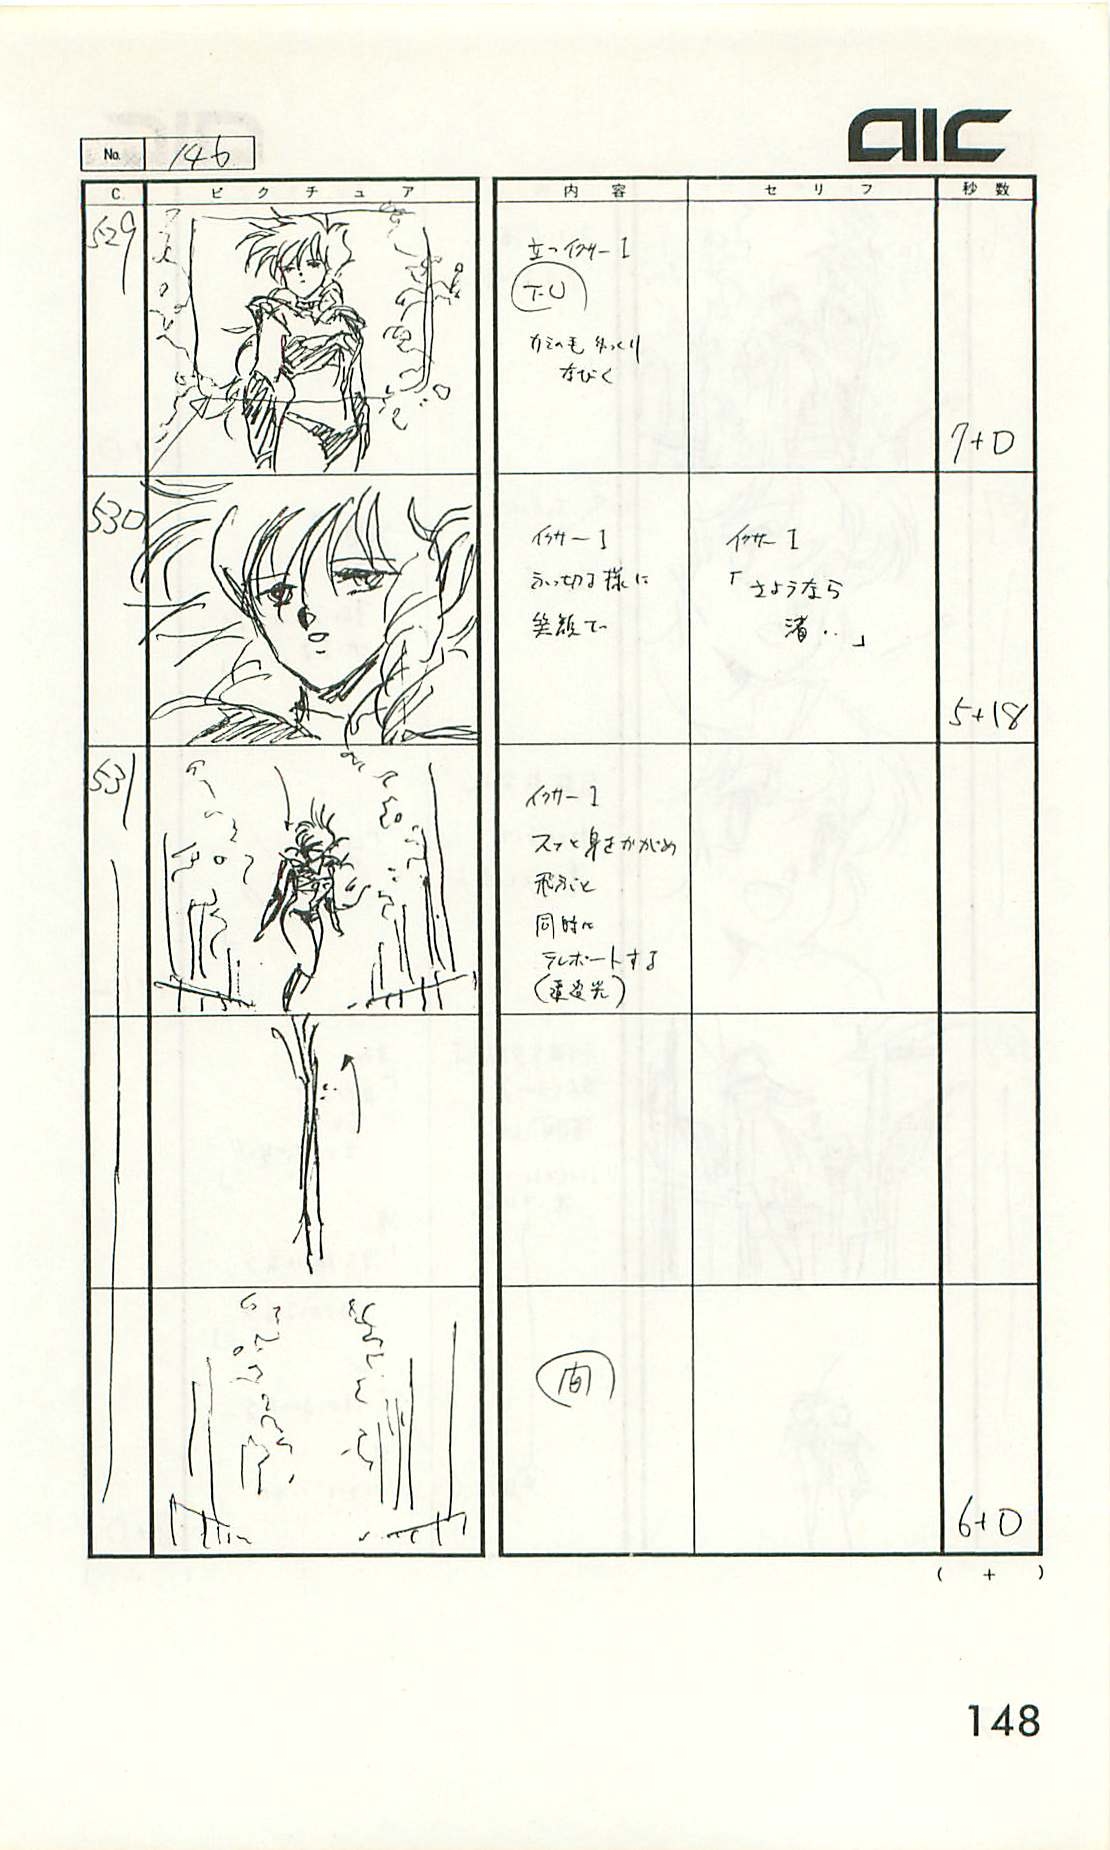 Iczer-One OVA 3 Storyboards 148